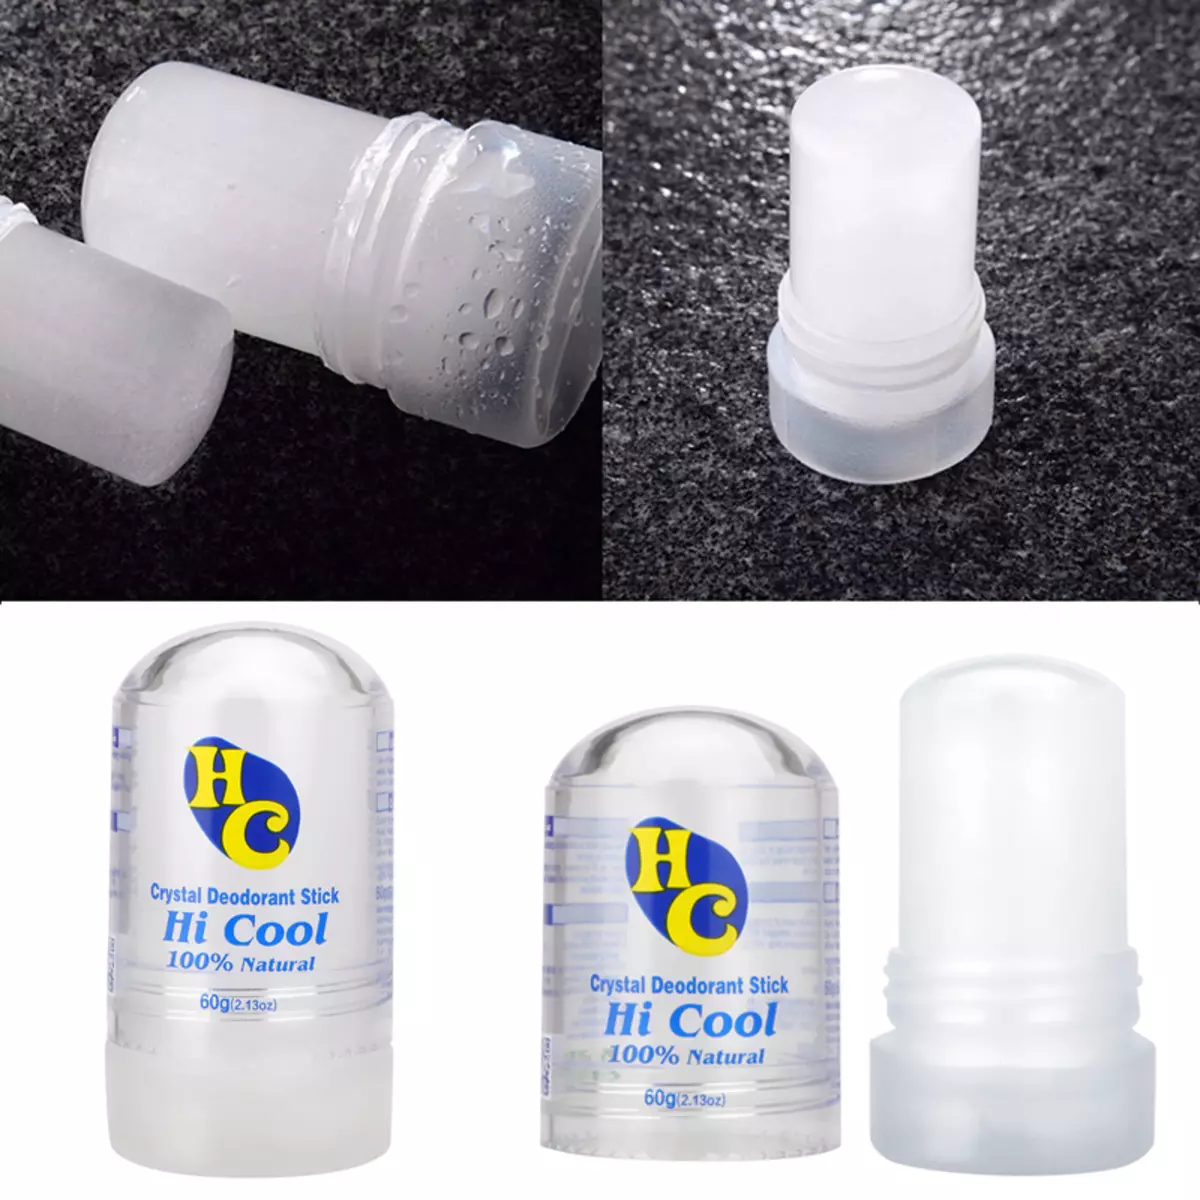 Deodorant sec (18 fotos): Què sembla l'antimpirant per a les dones? Com utilitzar-lo? 4658_7